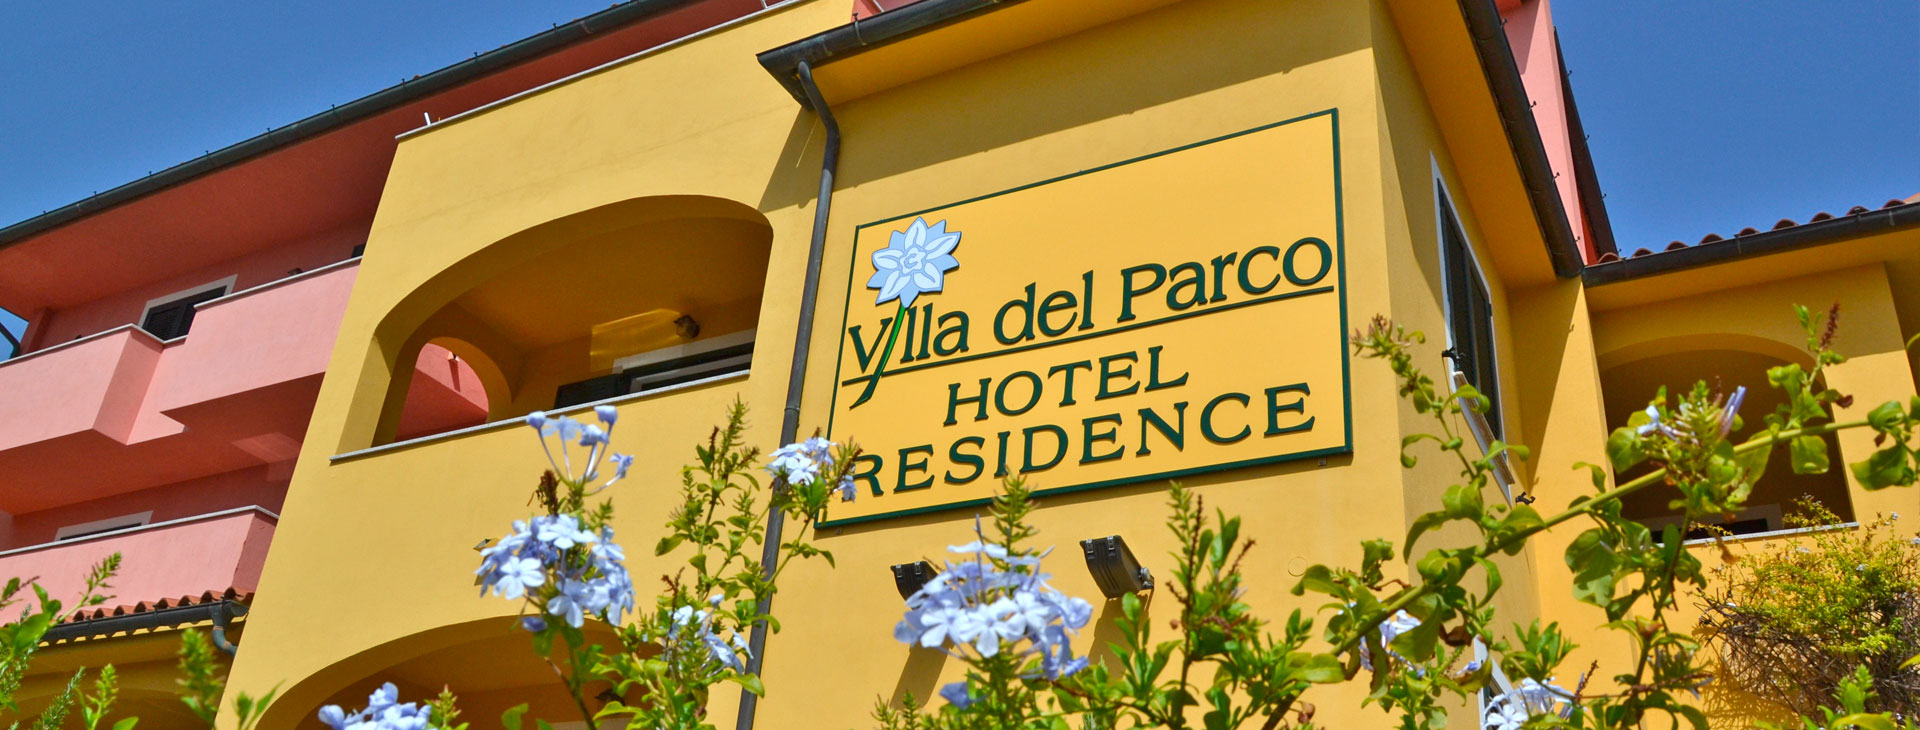 Villa del Parco and Casa Ilva